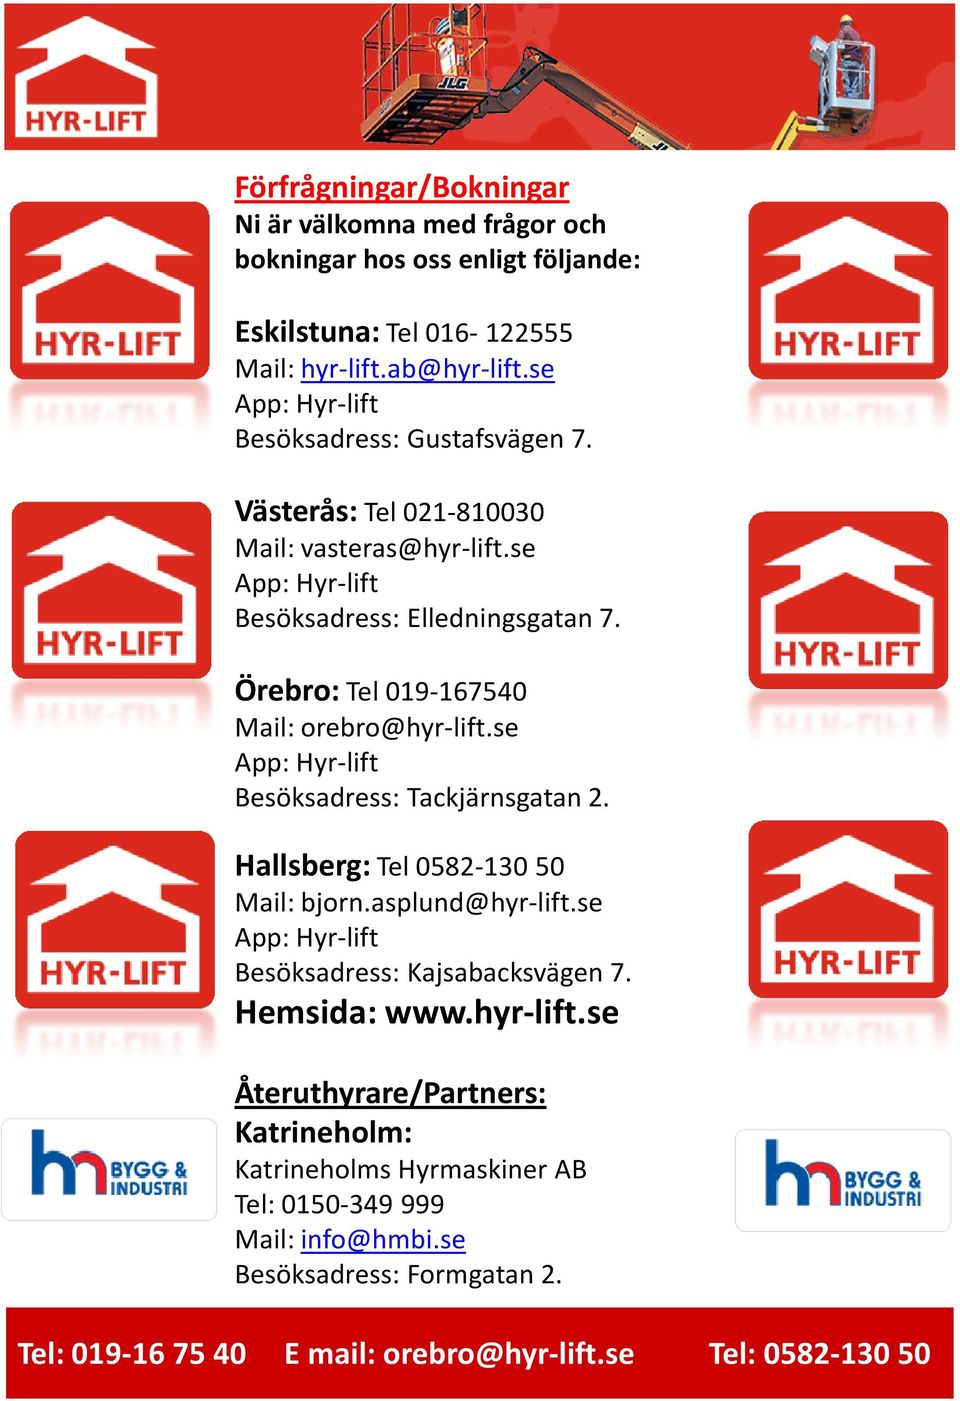 Örebro: Tel 019-167540 Mail: orebro@hyr-lift.se App: Hyr-lift Besöksadress: Tackjärnsgatan 2. Hallsberg: Tel 0582-130 50 Mail: bjorn.asplund@hyr-lift.